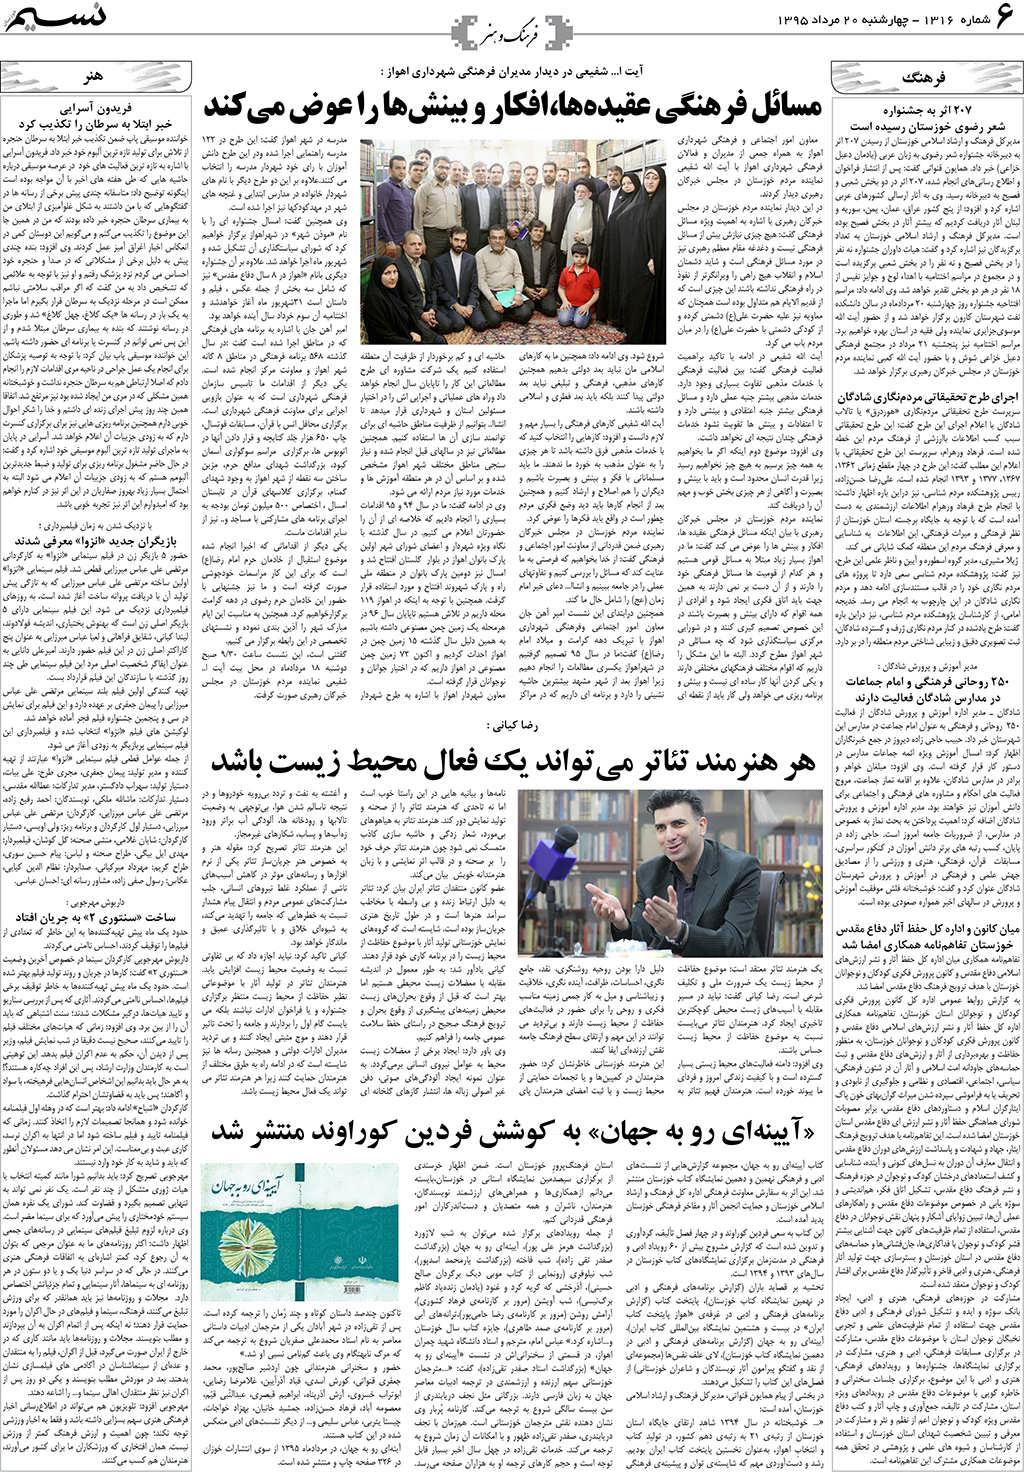 صفحه فرهنگ و هنر روزنامه نسیم شماره 1316